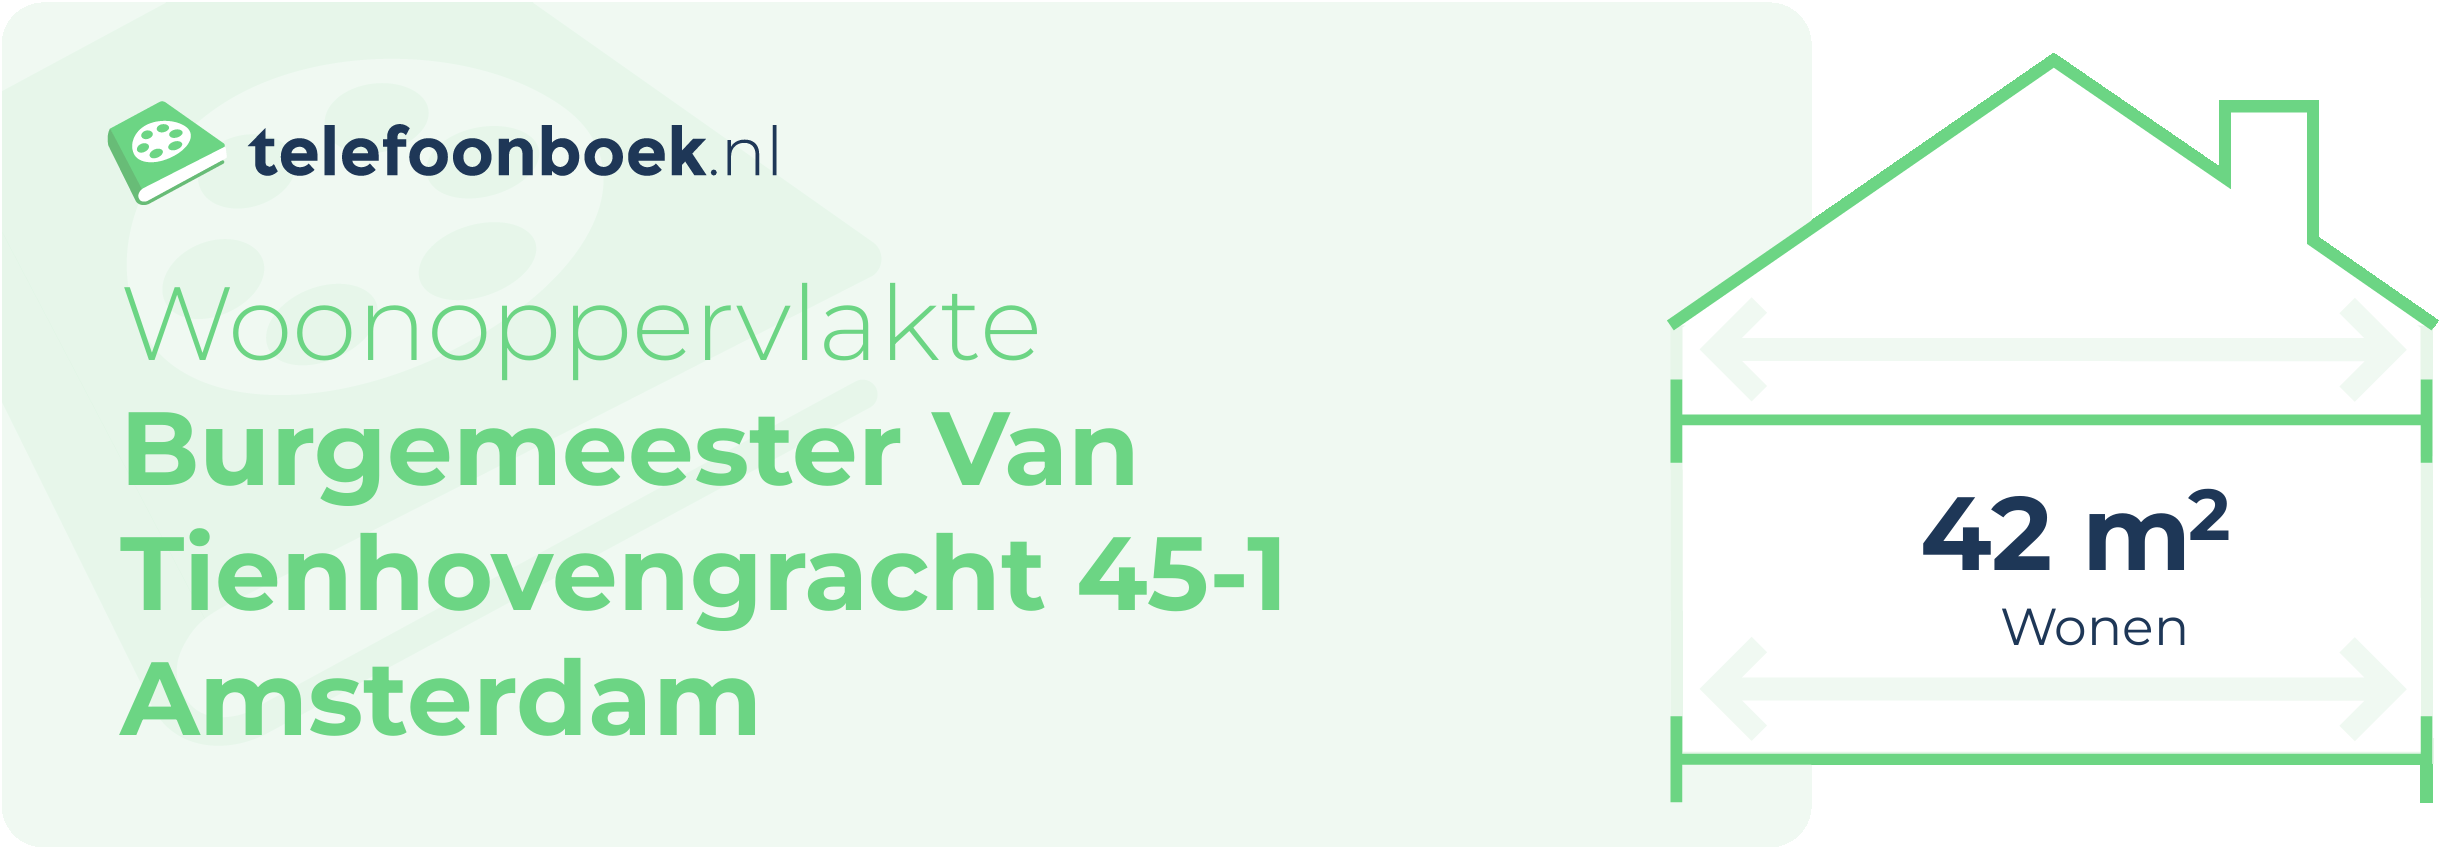 Woonoppervlakte Burgemeester Van Tienhovengracht 45-1 Amsterdam